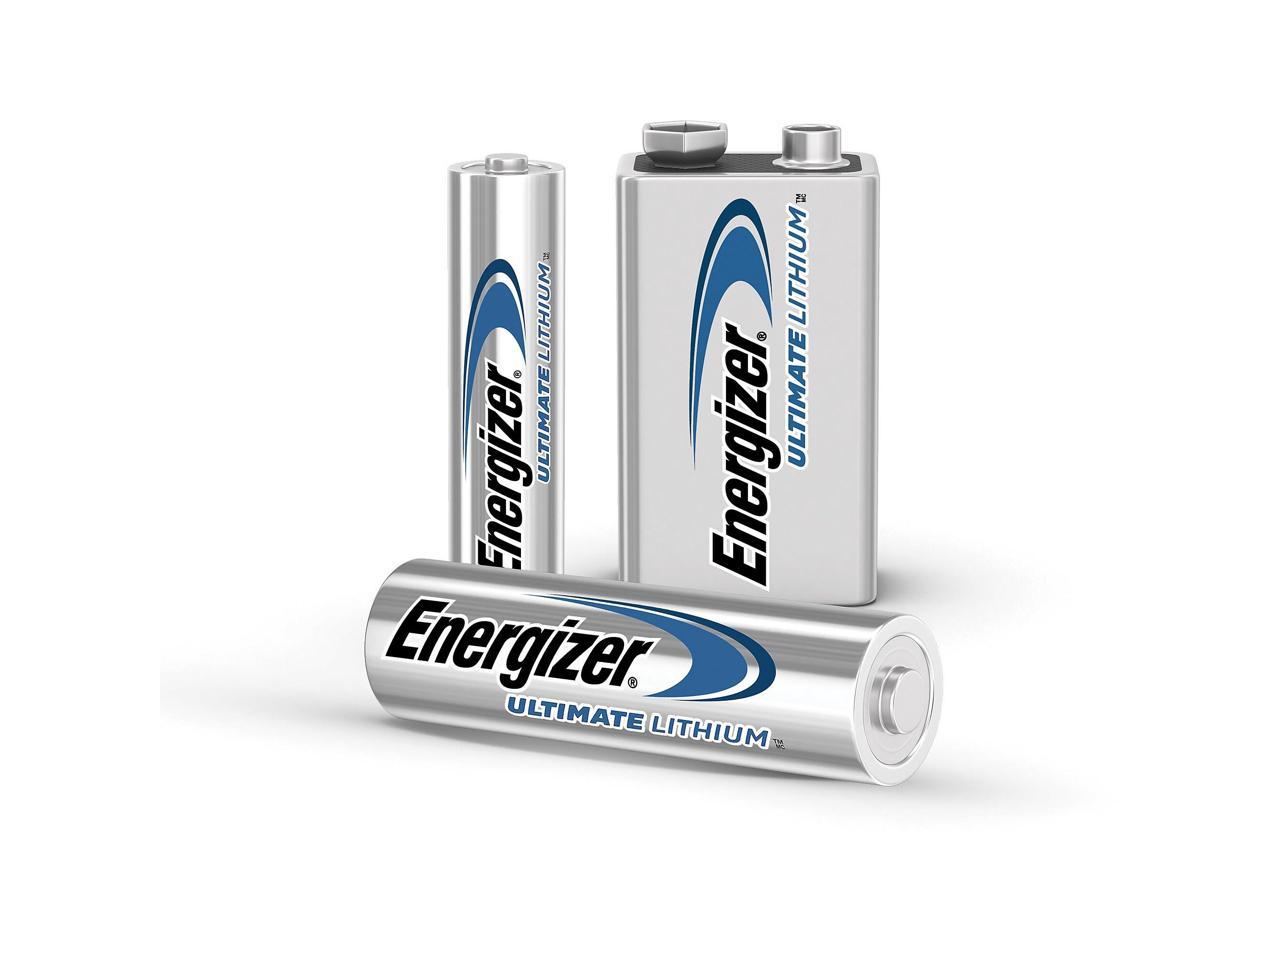 ENERGIZER Ultimate Lithium L522BP 9V Battery, 2-pack